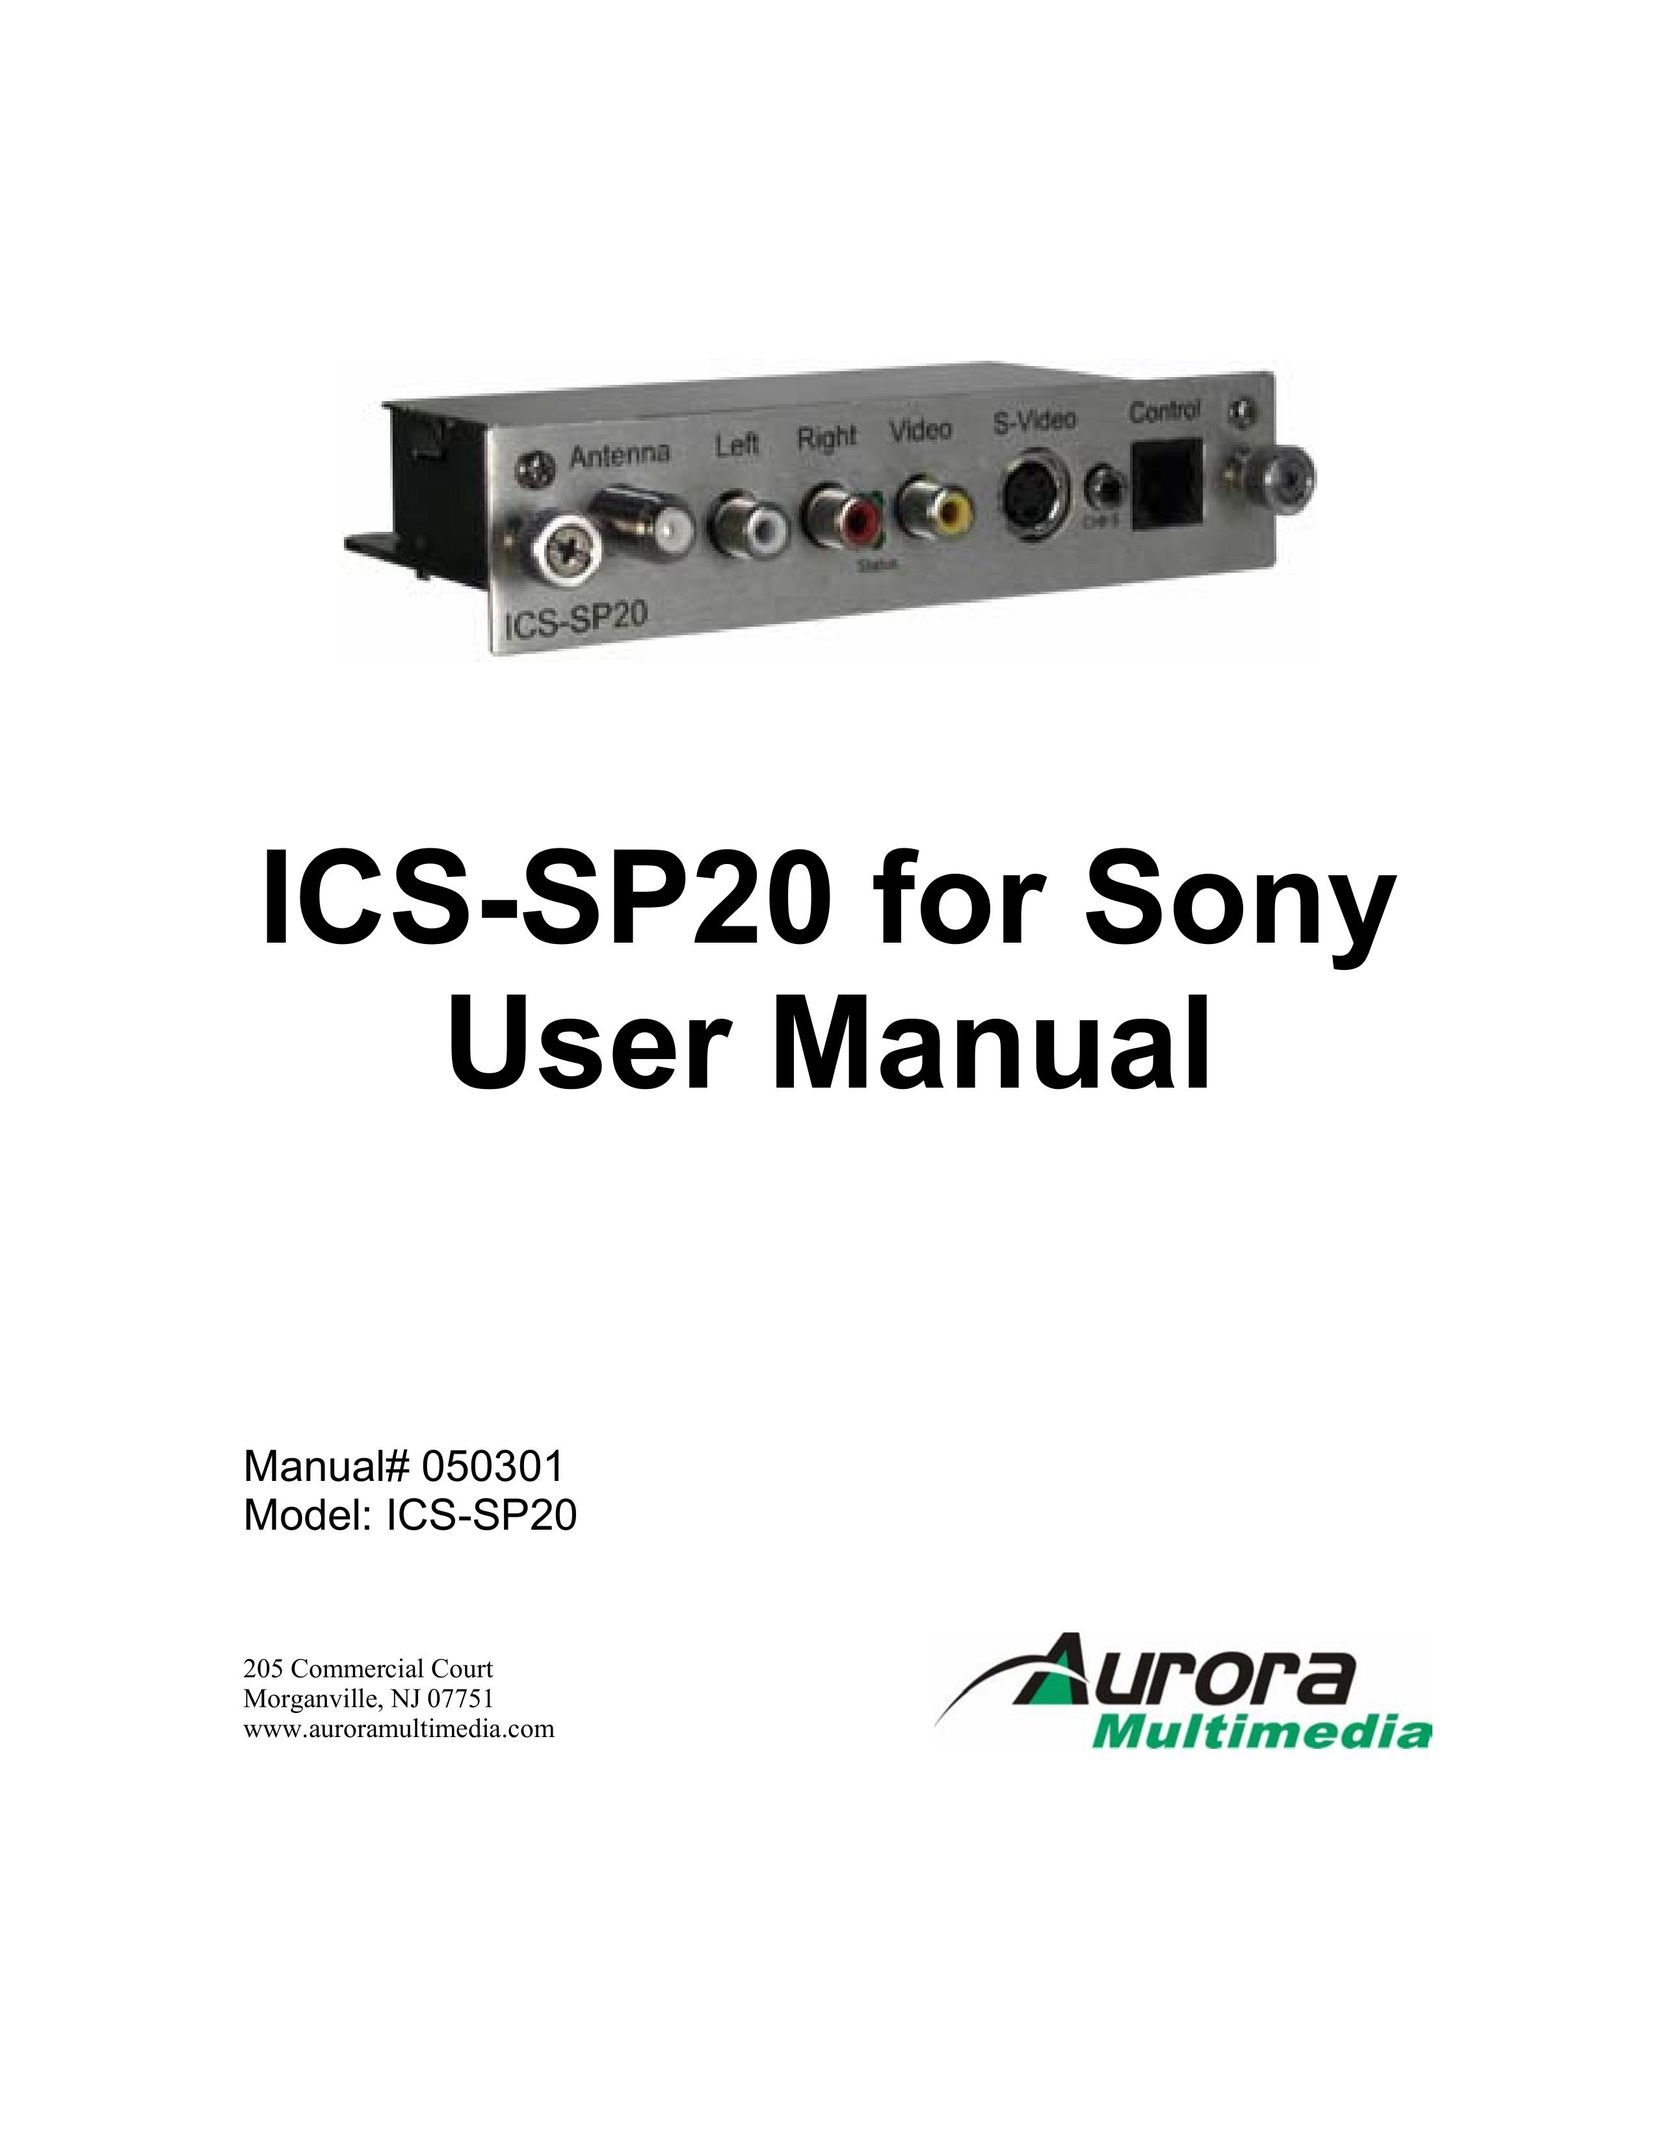 Aurora Multimedia ICS-SP20 TV Receiver User Manual